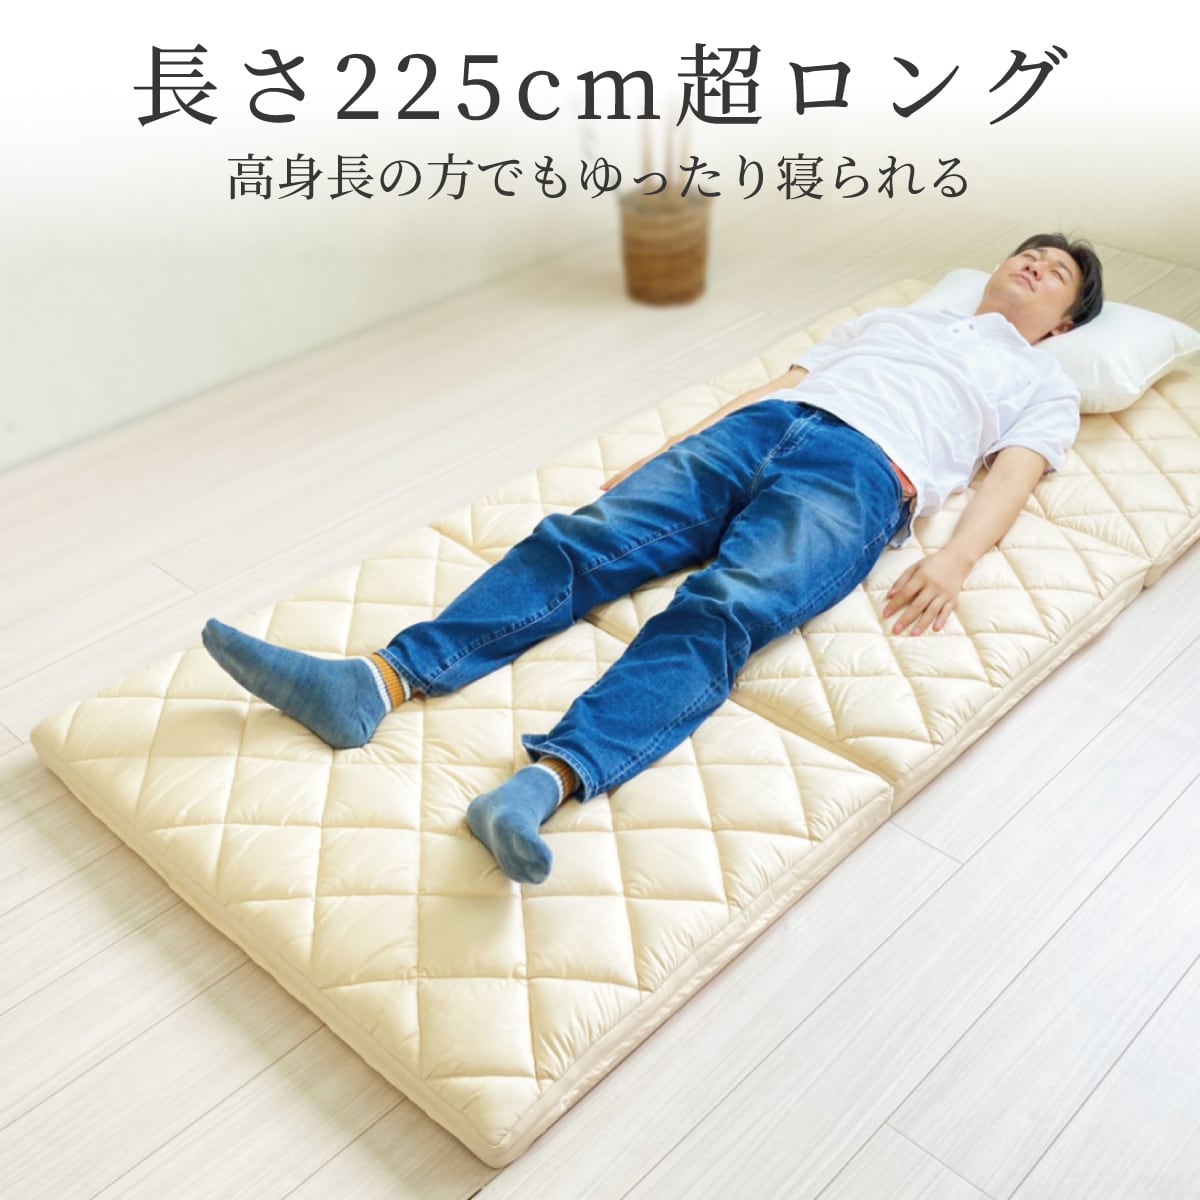 22.5cm【NIKE WMNS CLASSIC CORTEZ LEATHER】